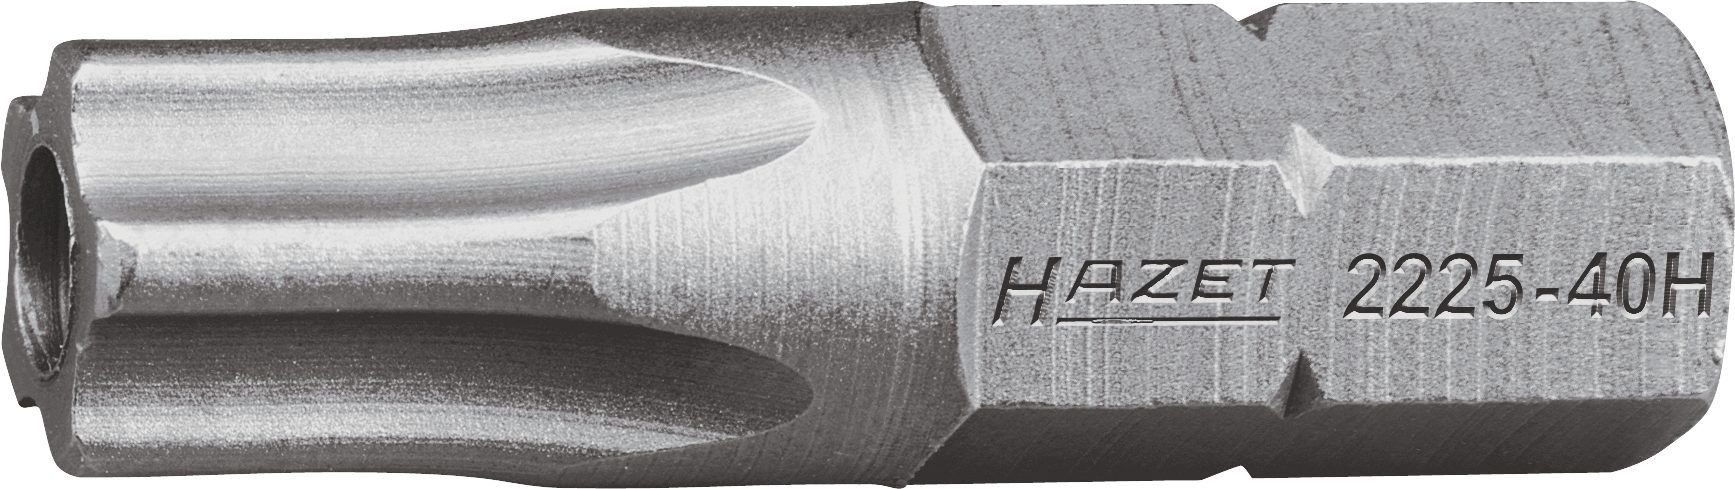 HAZET Bit-Set Hazet 5-Stern-Schraubendr.-Einsatz (Bit), 2225-20H